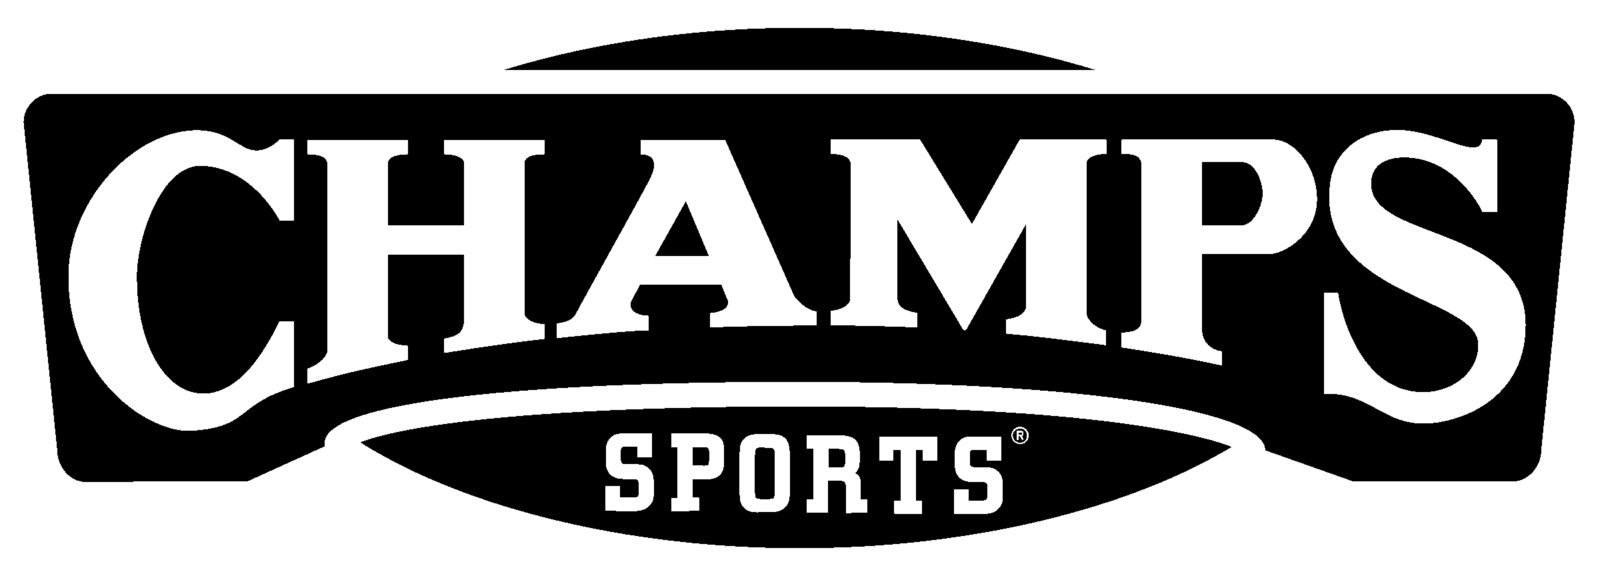 Champs Sports Bowl Logo